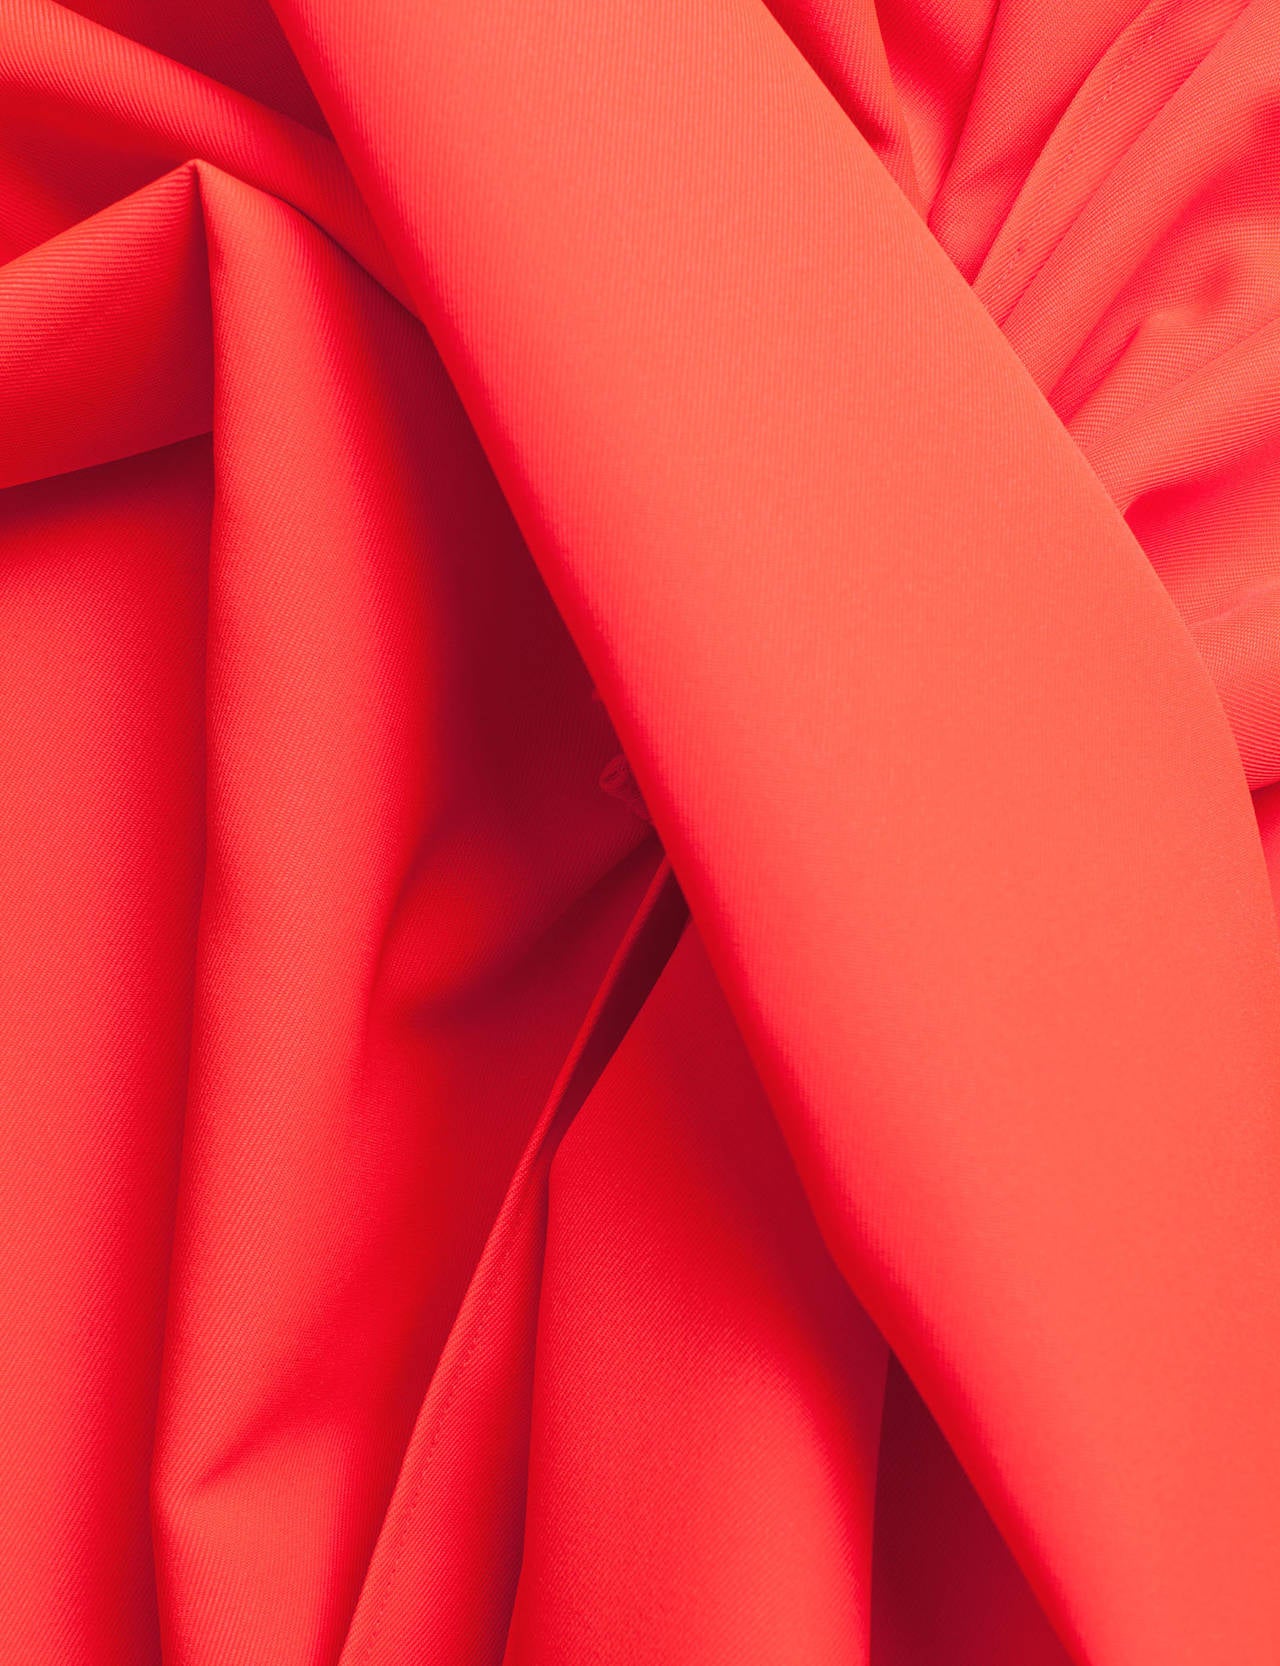 Jil Sander by Raf Simons *Trilogy Of Couture* 2009 Neon Robe, Sz. M/L 1